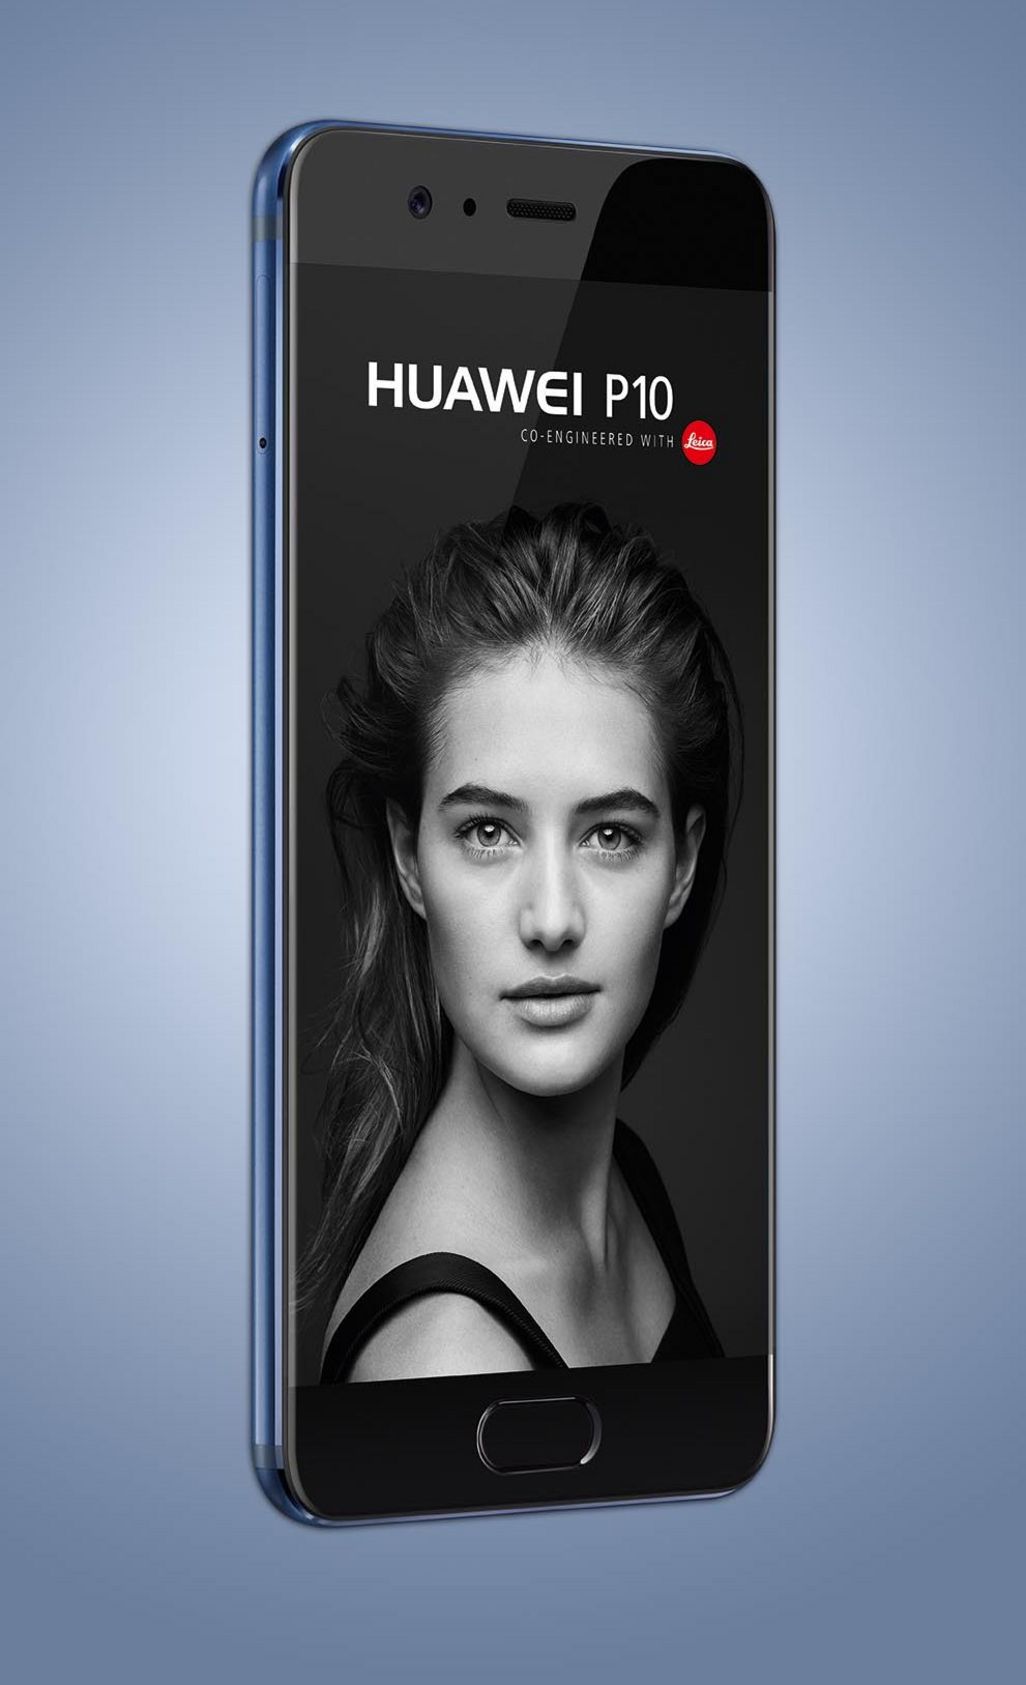 In gleich zwei Versionen präsentiert Huawei beim MWC in Barcelona sein neues Top-Smartphone.